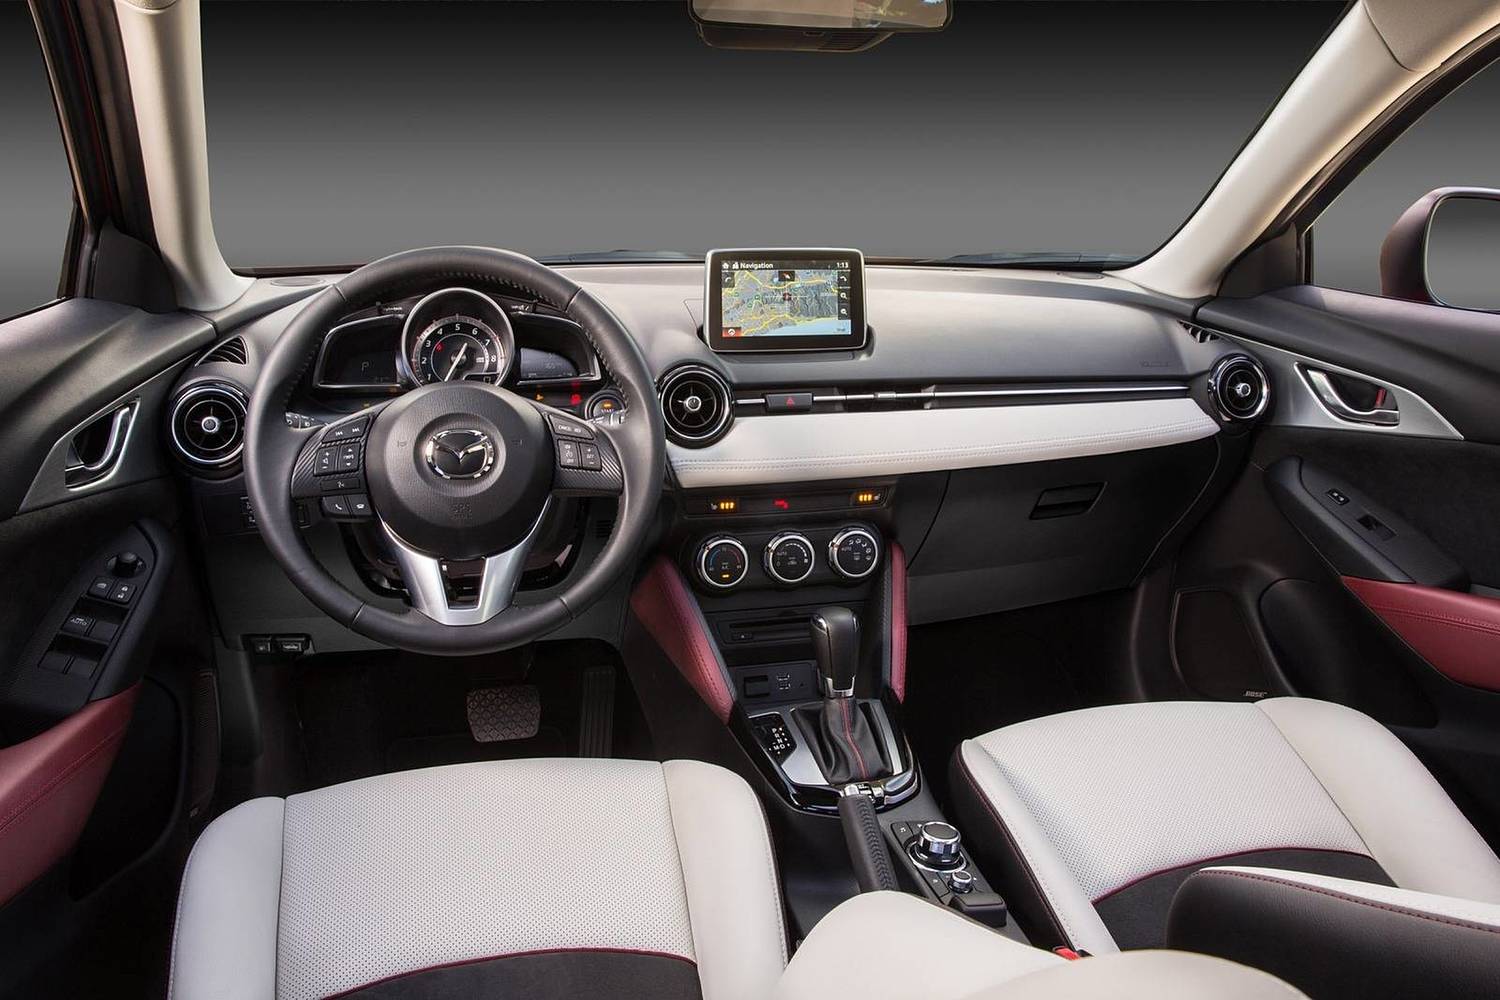 2017 Mazda CX-3 Grand Touring 4dr SUV Dashboard Shown